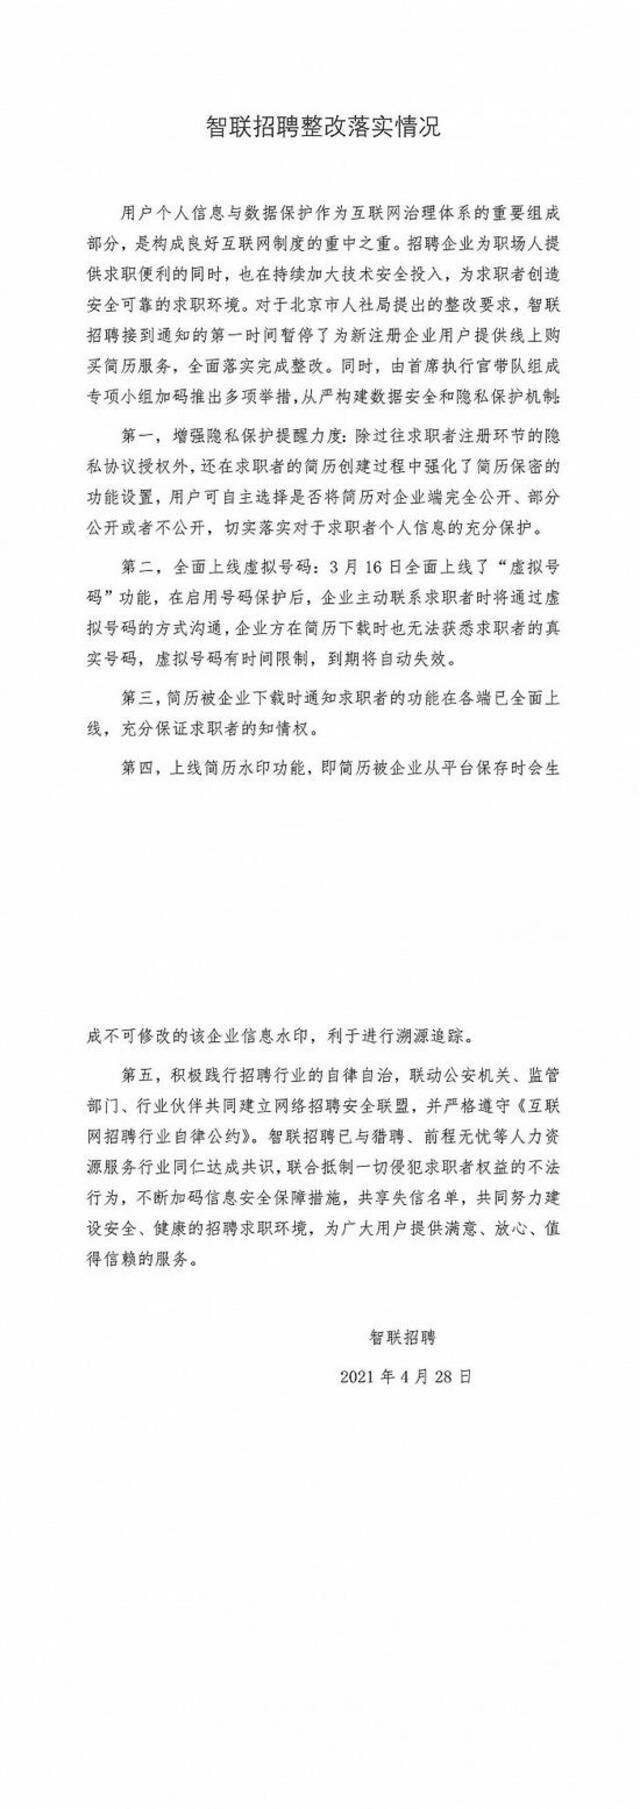 智联招聘、猎聘泄露用户个人简历，北京市人社局公布整改情况